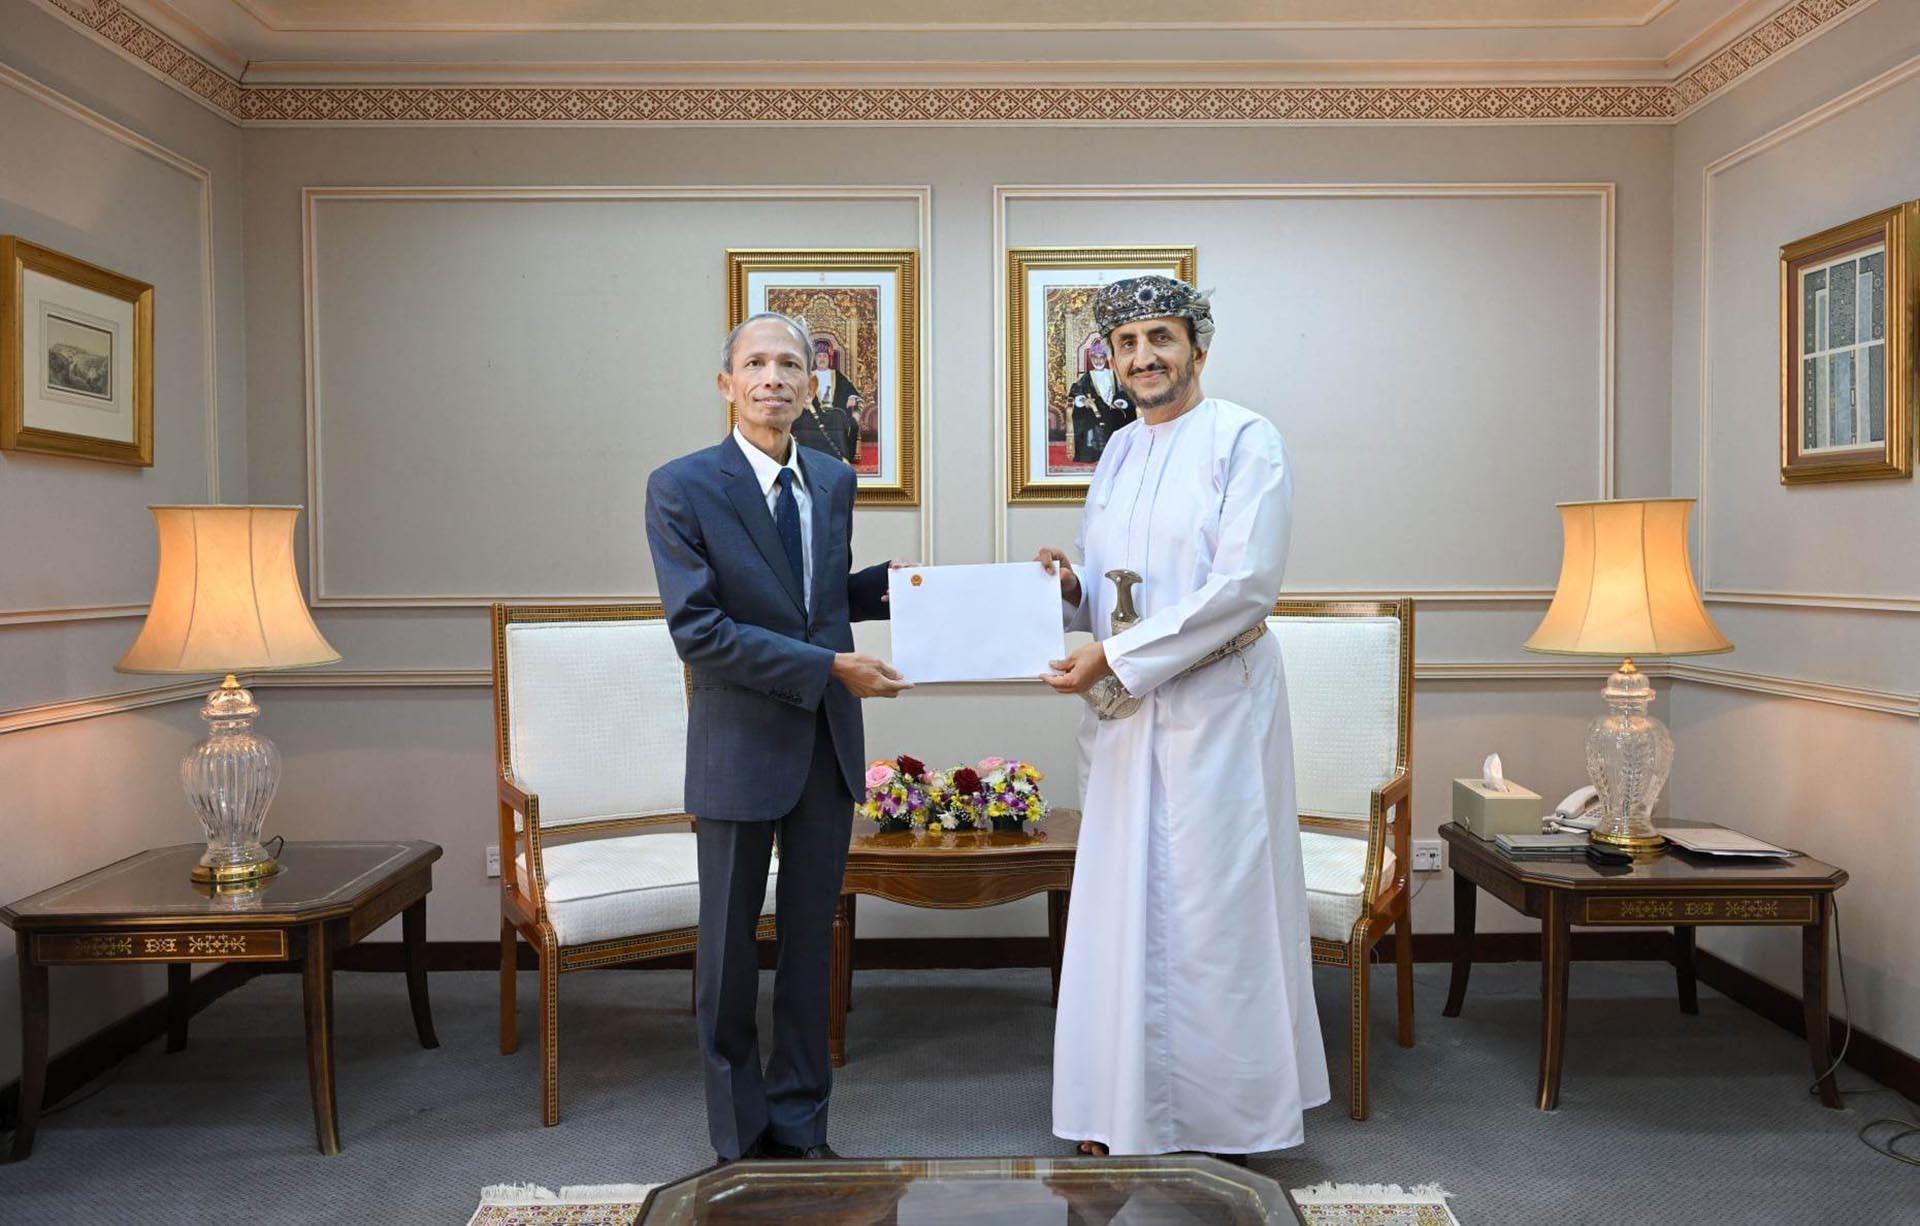 Đại sứ Đặng Xuân Dũng trình bản sao Thư ủy nhiệm lên Thứ trưởng Ngoại giao Oman Sheikh Khalifa AlHarthy.